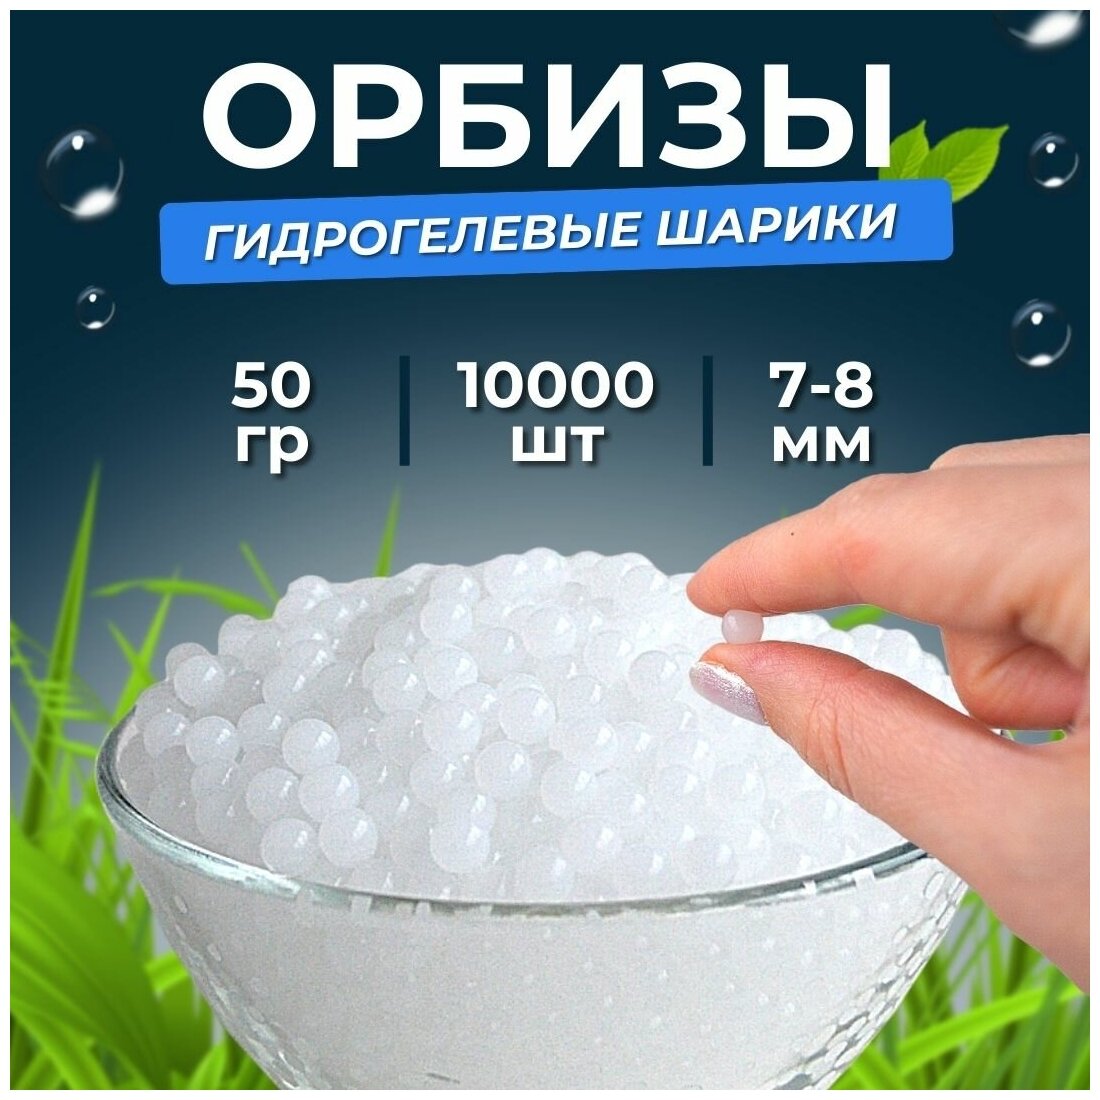 Орбизы, гидрогелевые шарики, 7-8 мм, 10.000 шт, белые, прозрачная упаковка